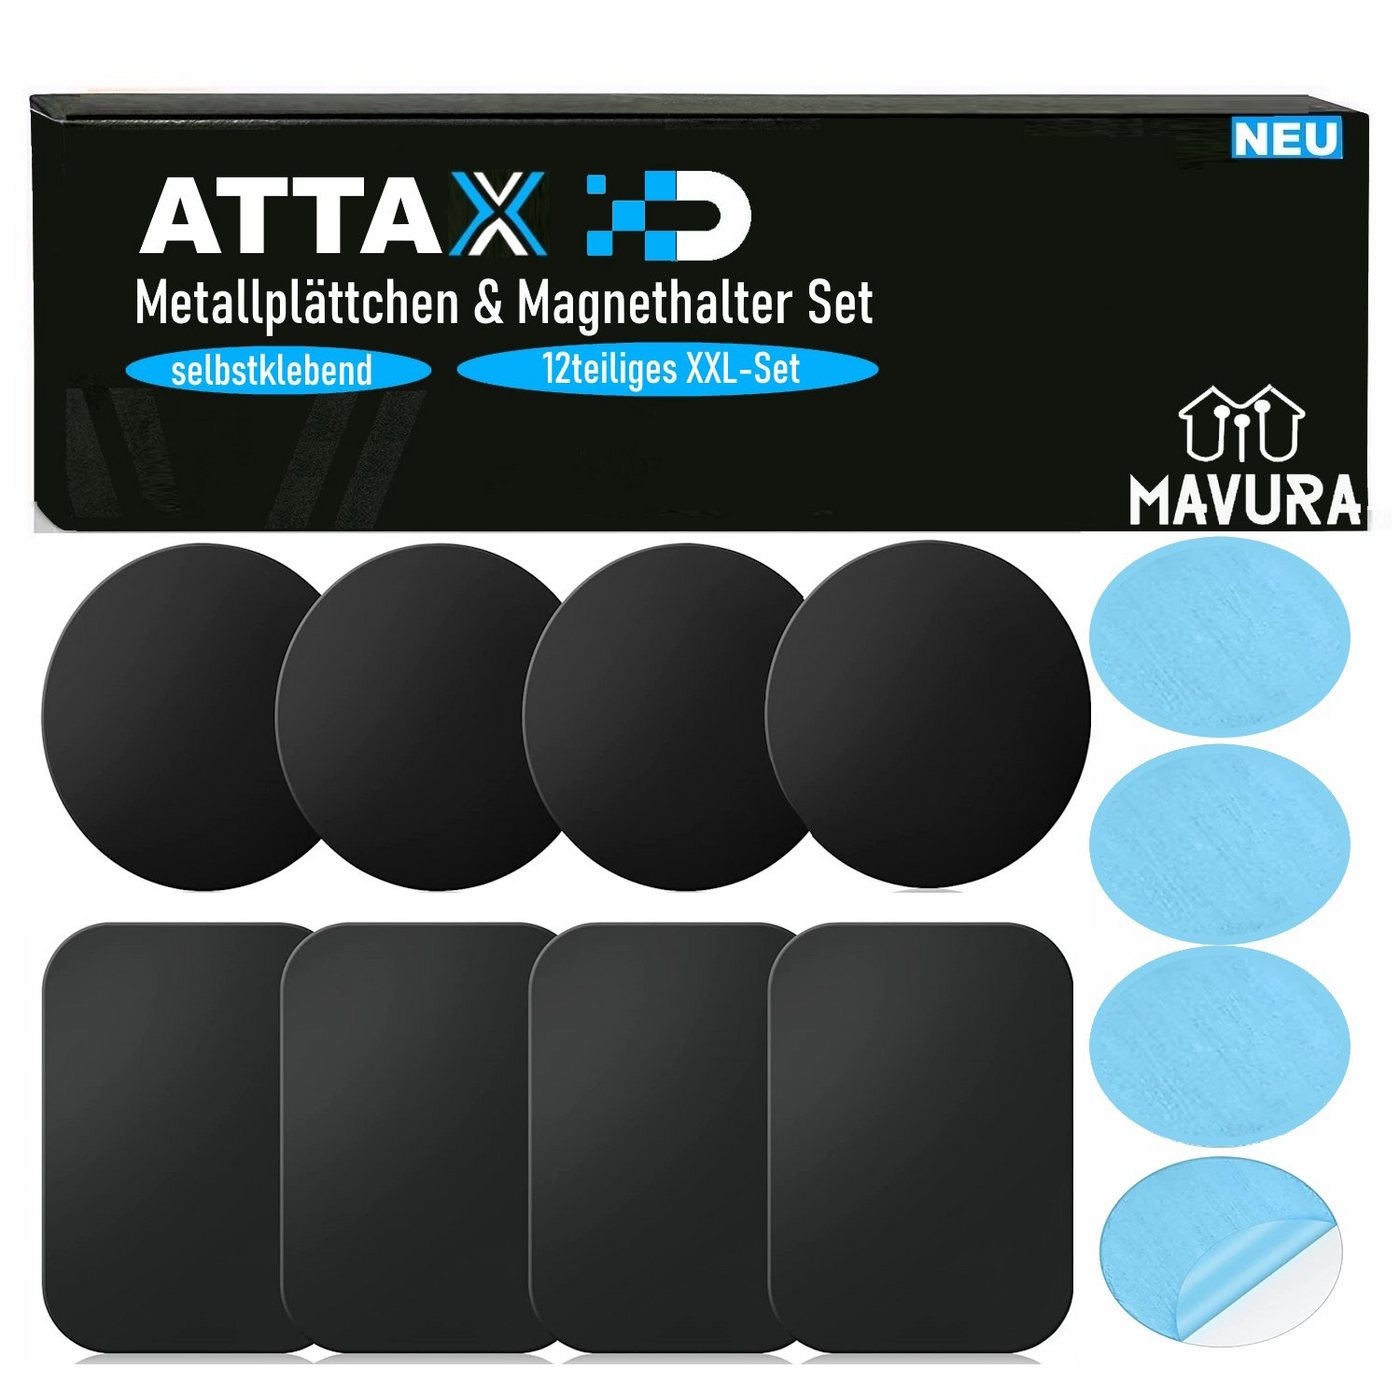 MAVURA Magnethalter ATTAX Metallplättchen mit Magnethalter selbstklebend, für KFZ Handy Smartphone Rauchmelder etc. - XXL Set [12teilig] schwarz